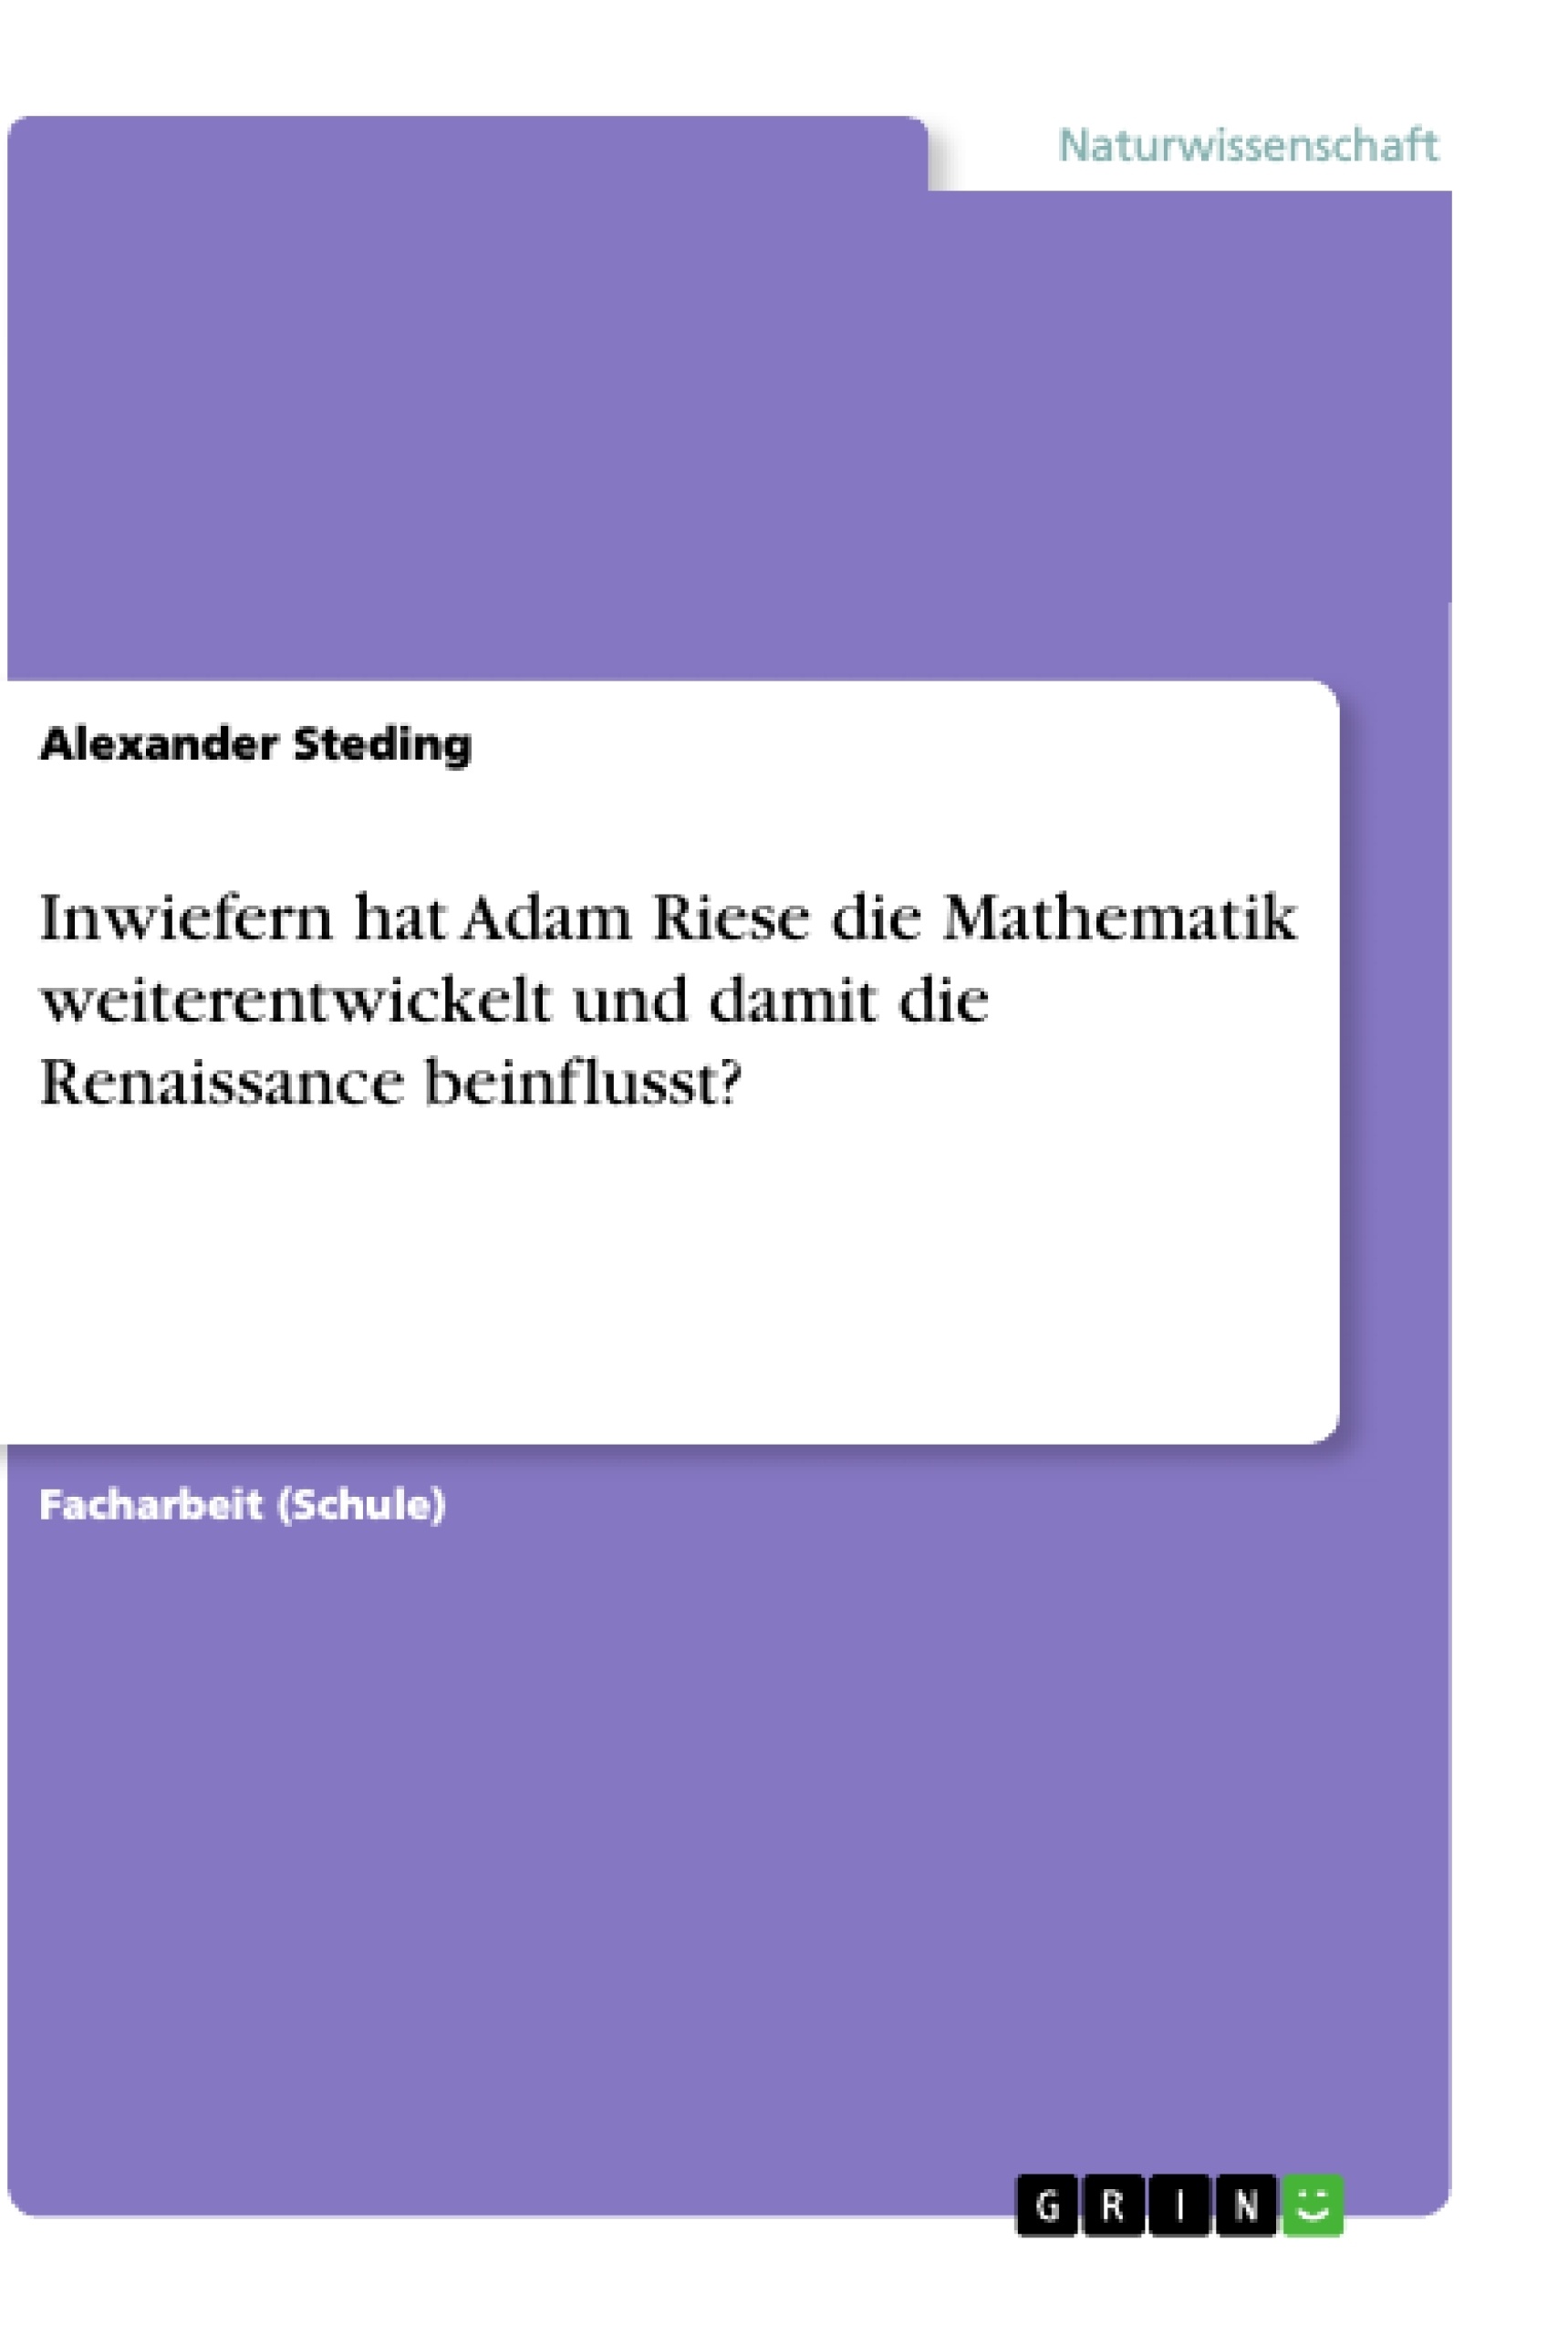 Título: Inwiefern hat Adam Riese die Mathematik weiterentwickelt und damit die Renaissance beinflusst?